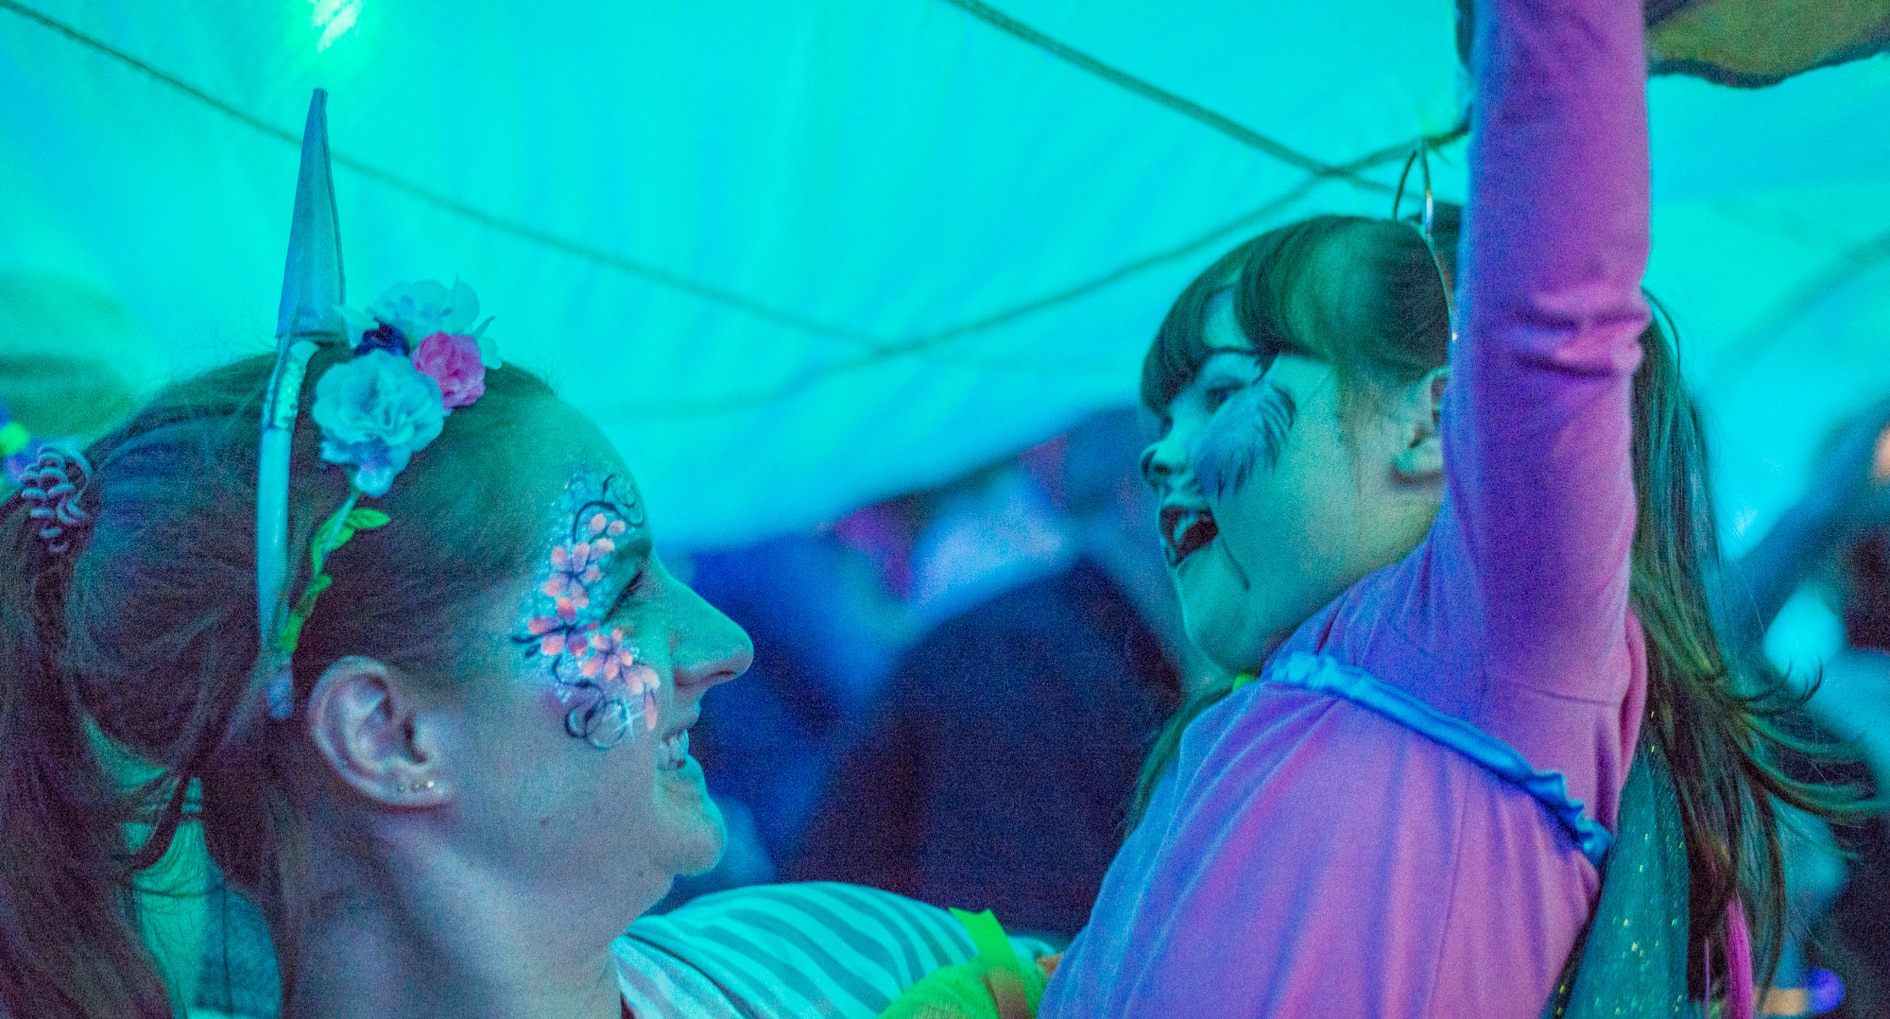 Family Rave at Corbridge Festival 